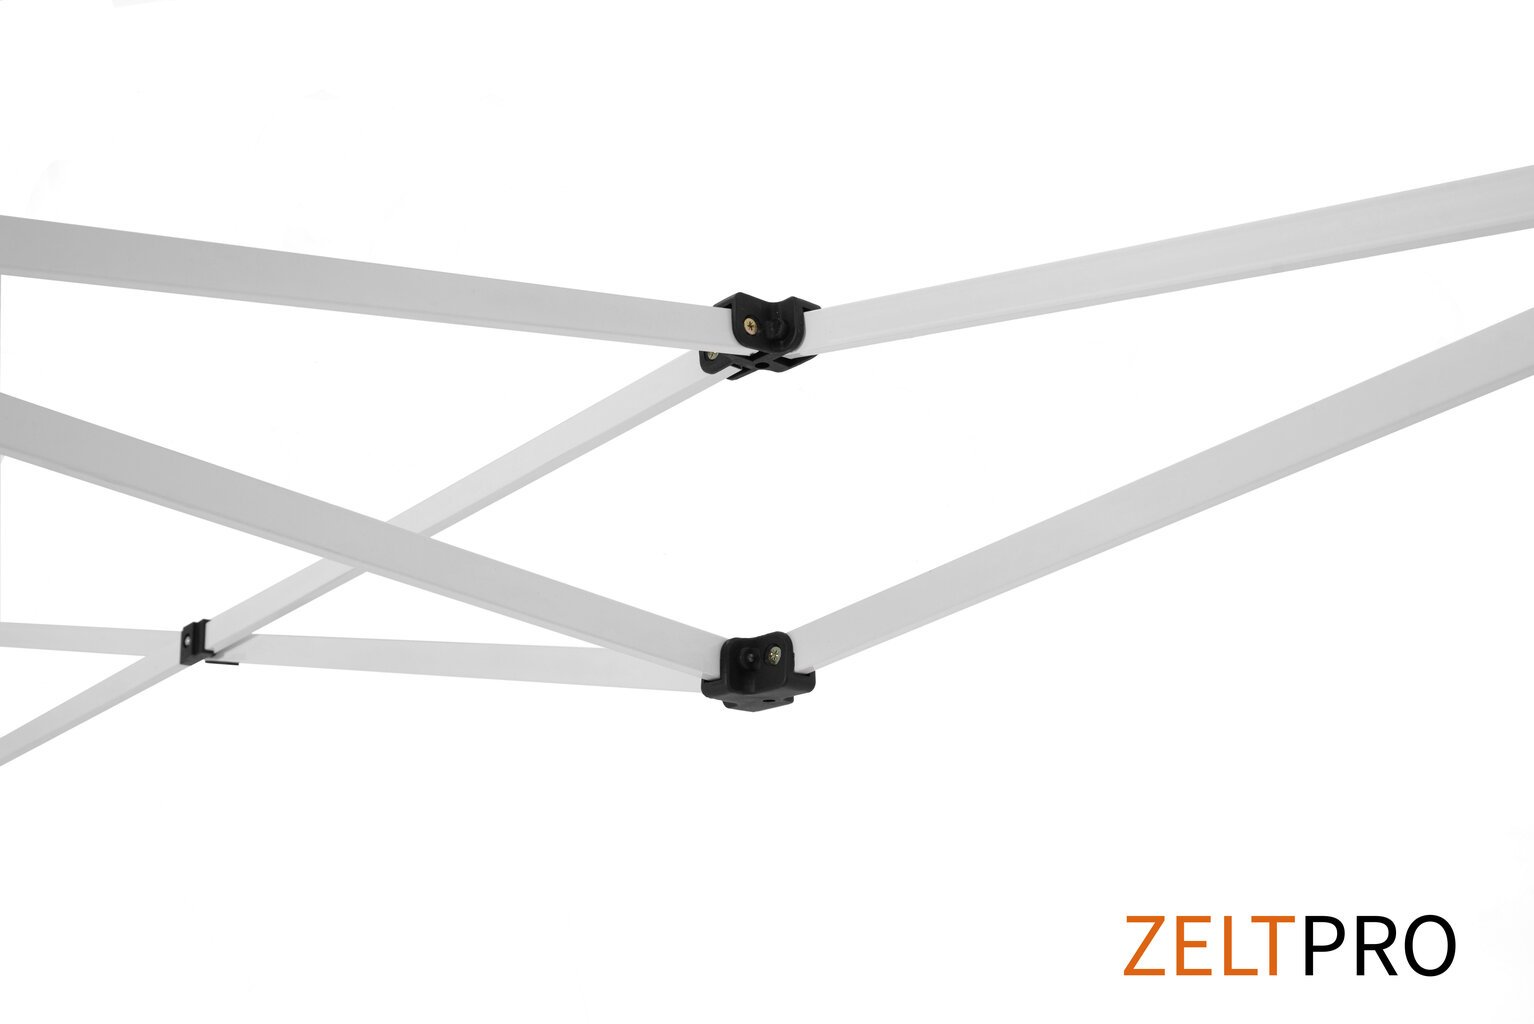 Prekybinė palapinė Zeltpro Proframe, 3x4,5m, balta kaina ir informacija | Palapinės | pigu.lt